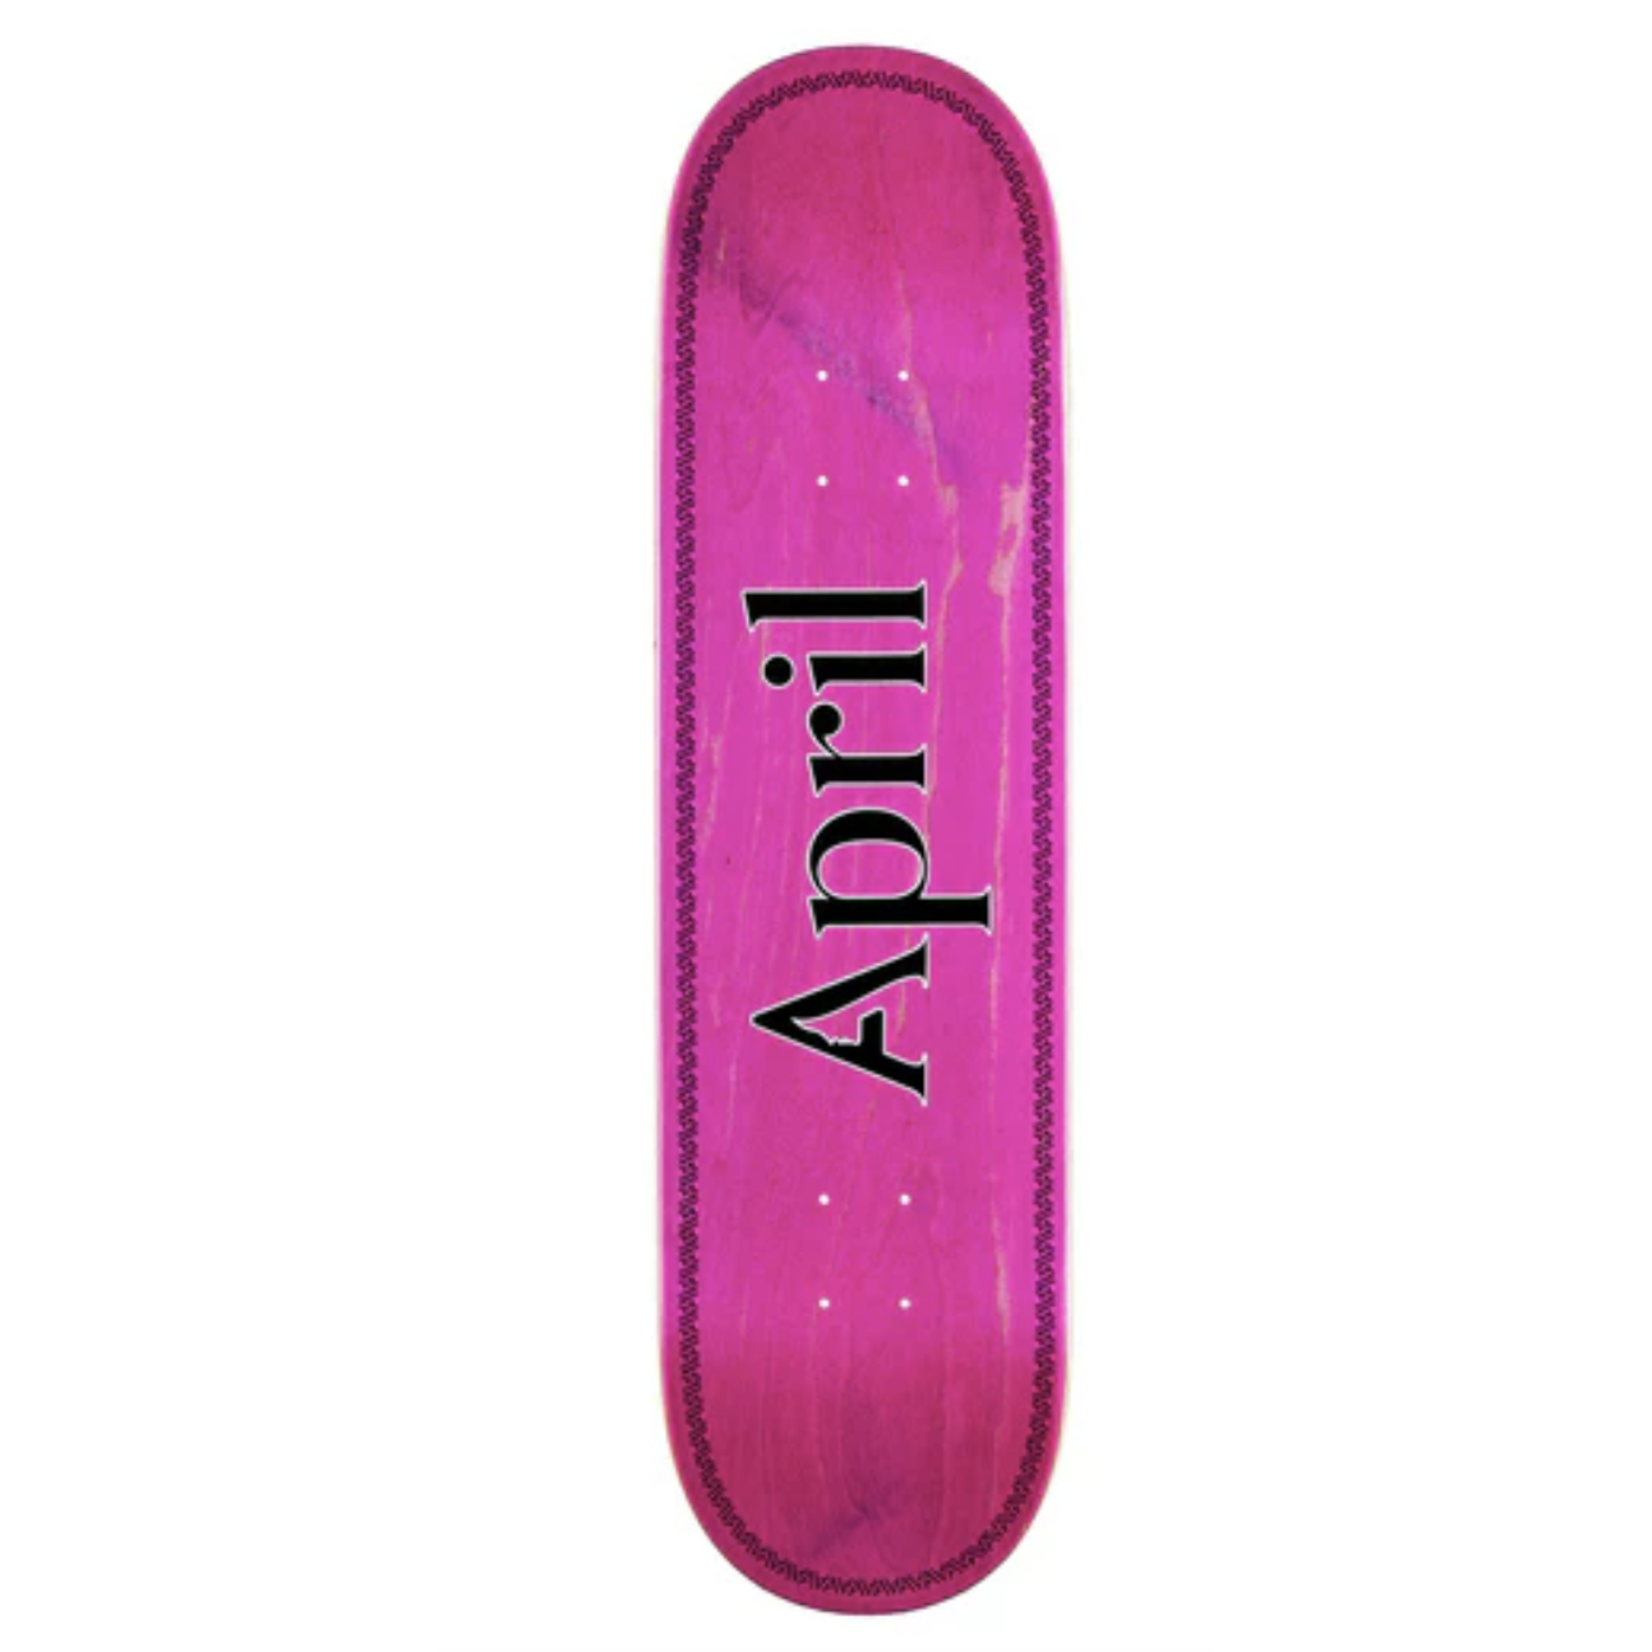 APRIL April OG Logo Pink Helix Skateboard Deck 8.25